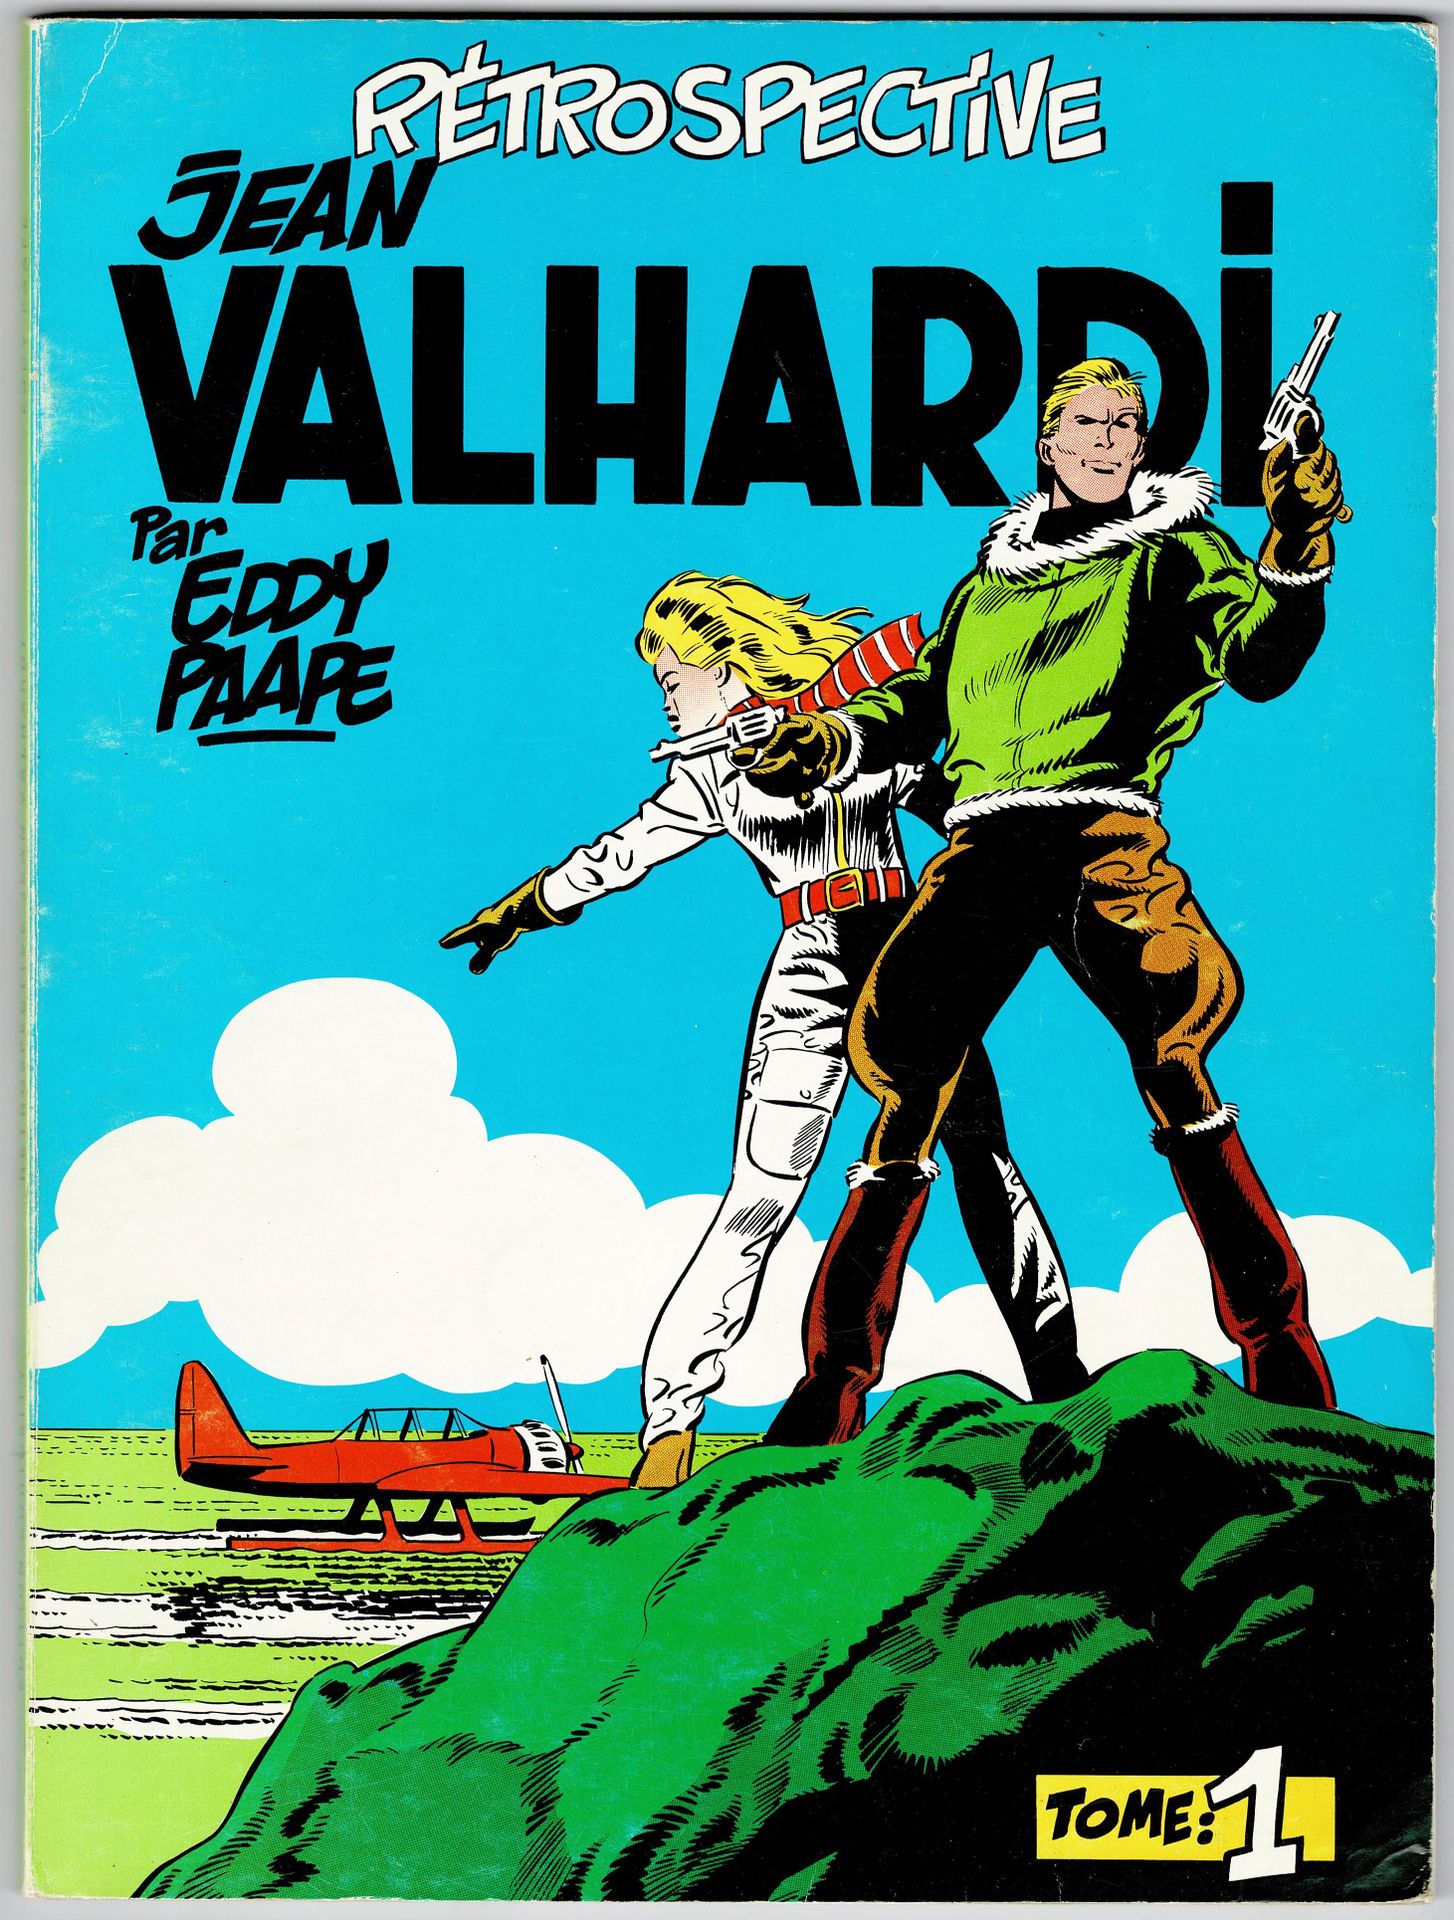 Valhardi 
Retrospettiva Jean Valhardi Tomes 1 e 2 pubblicato da Deligne. Condizi&hellip;